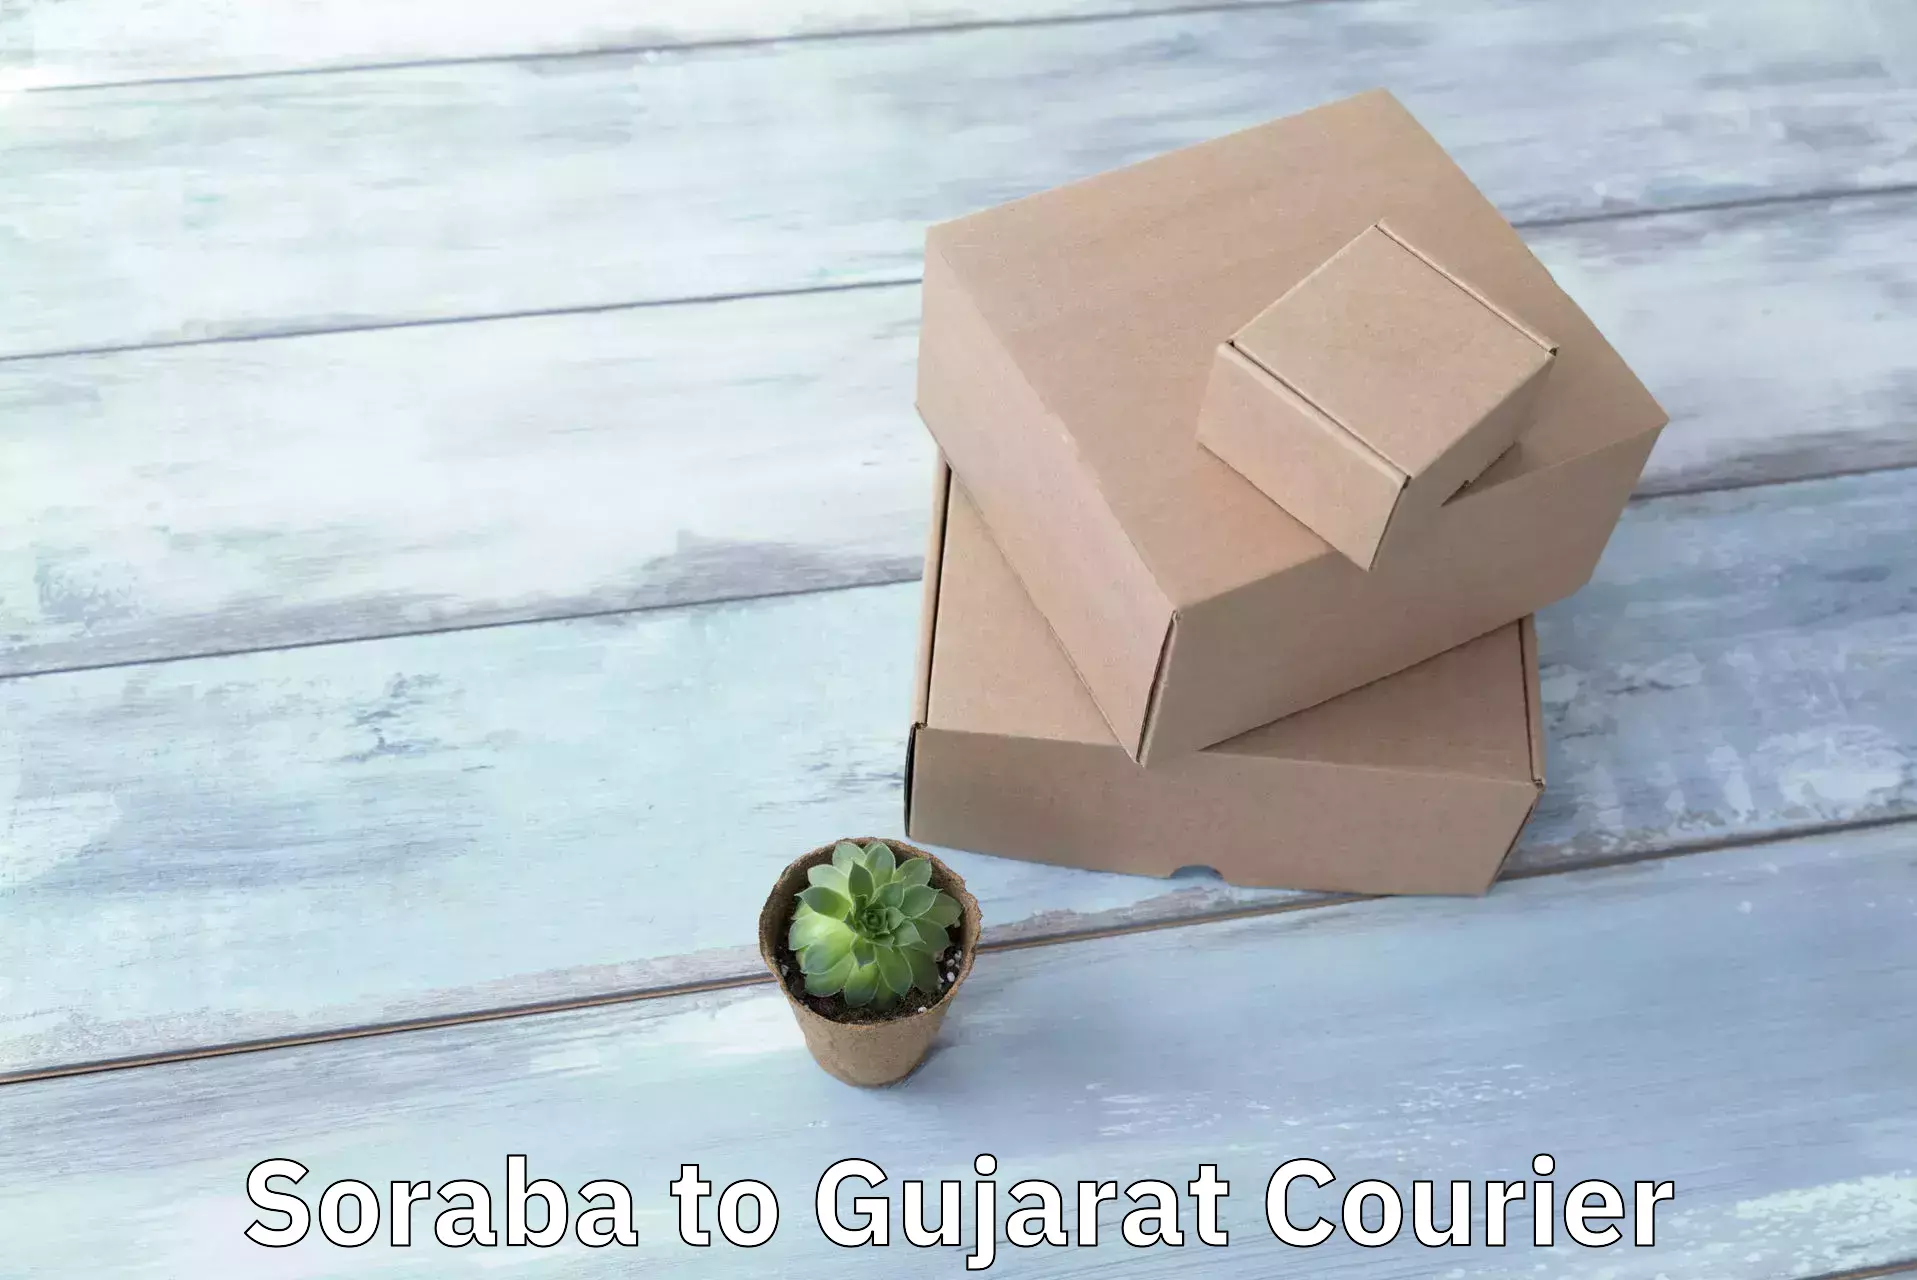 Cost-effective courier options Soraba to Naliya